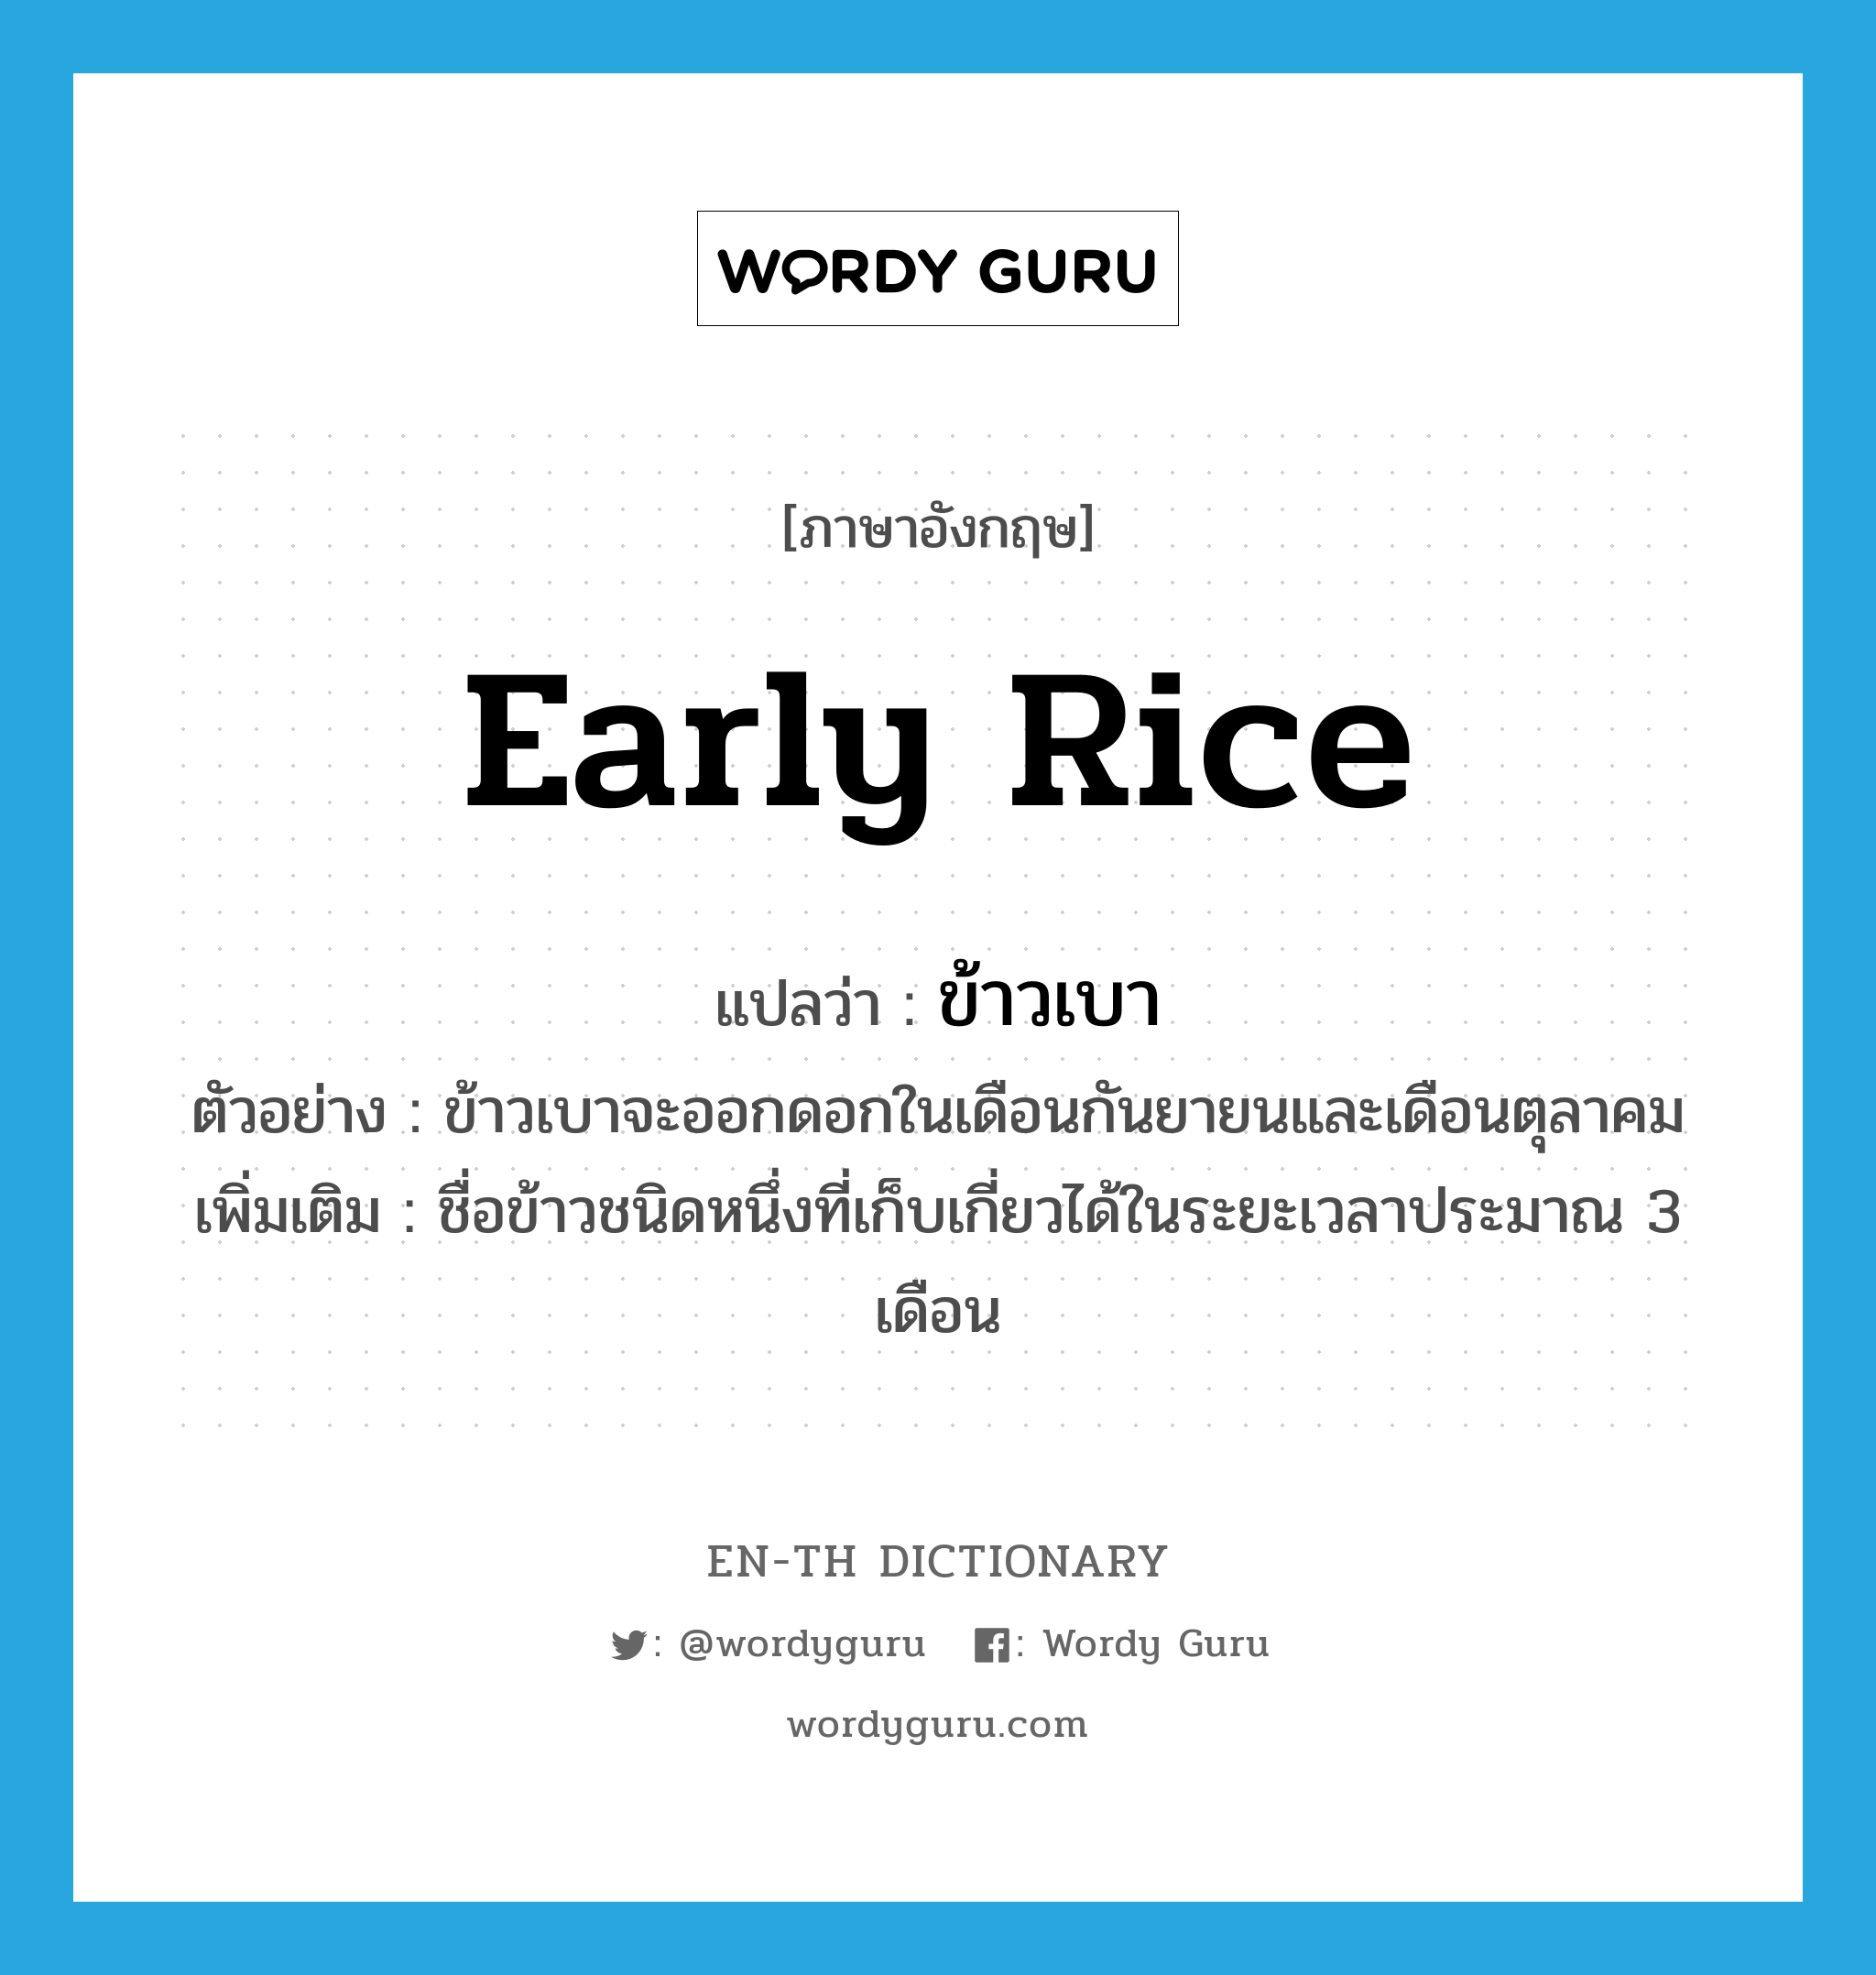 ข้าวเบา ภาษาอังกฤษ?, คำศัพท์ภาษาอังกฤษ ข้าวเบา แปลว่า early rice ประเภท N ตัวอย่าง ข้าวเบาจะออกดอกในเดือนกันยายนและเดือนตุลาคม เพิ่มเติม ชื่อข้าวชนิดหนึ่งที่เก็บเกี่ยวได้ในระยะเวลาประมาณ 3 เดือน หมวด N